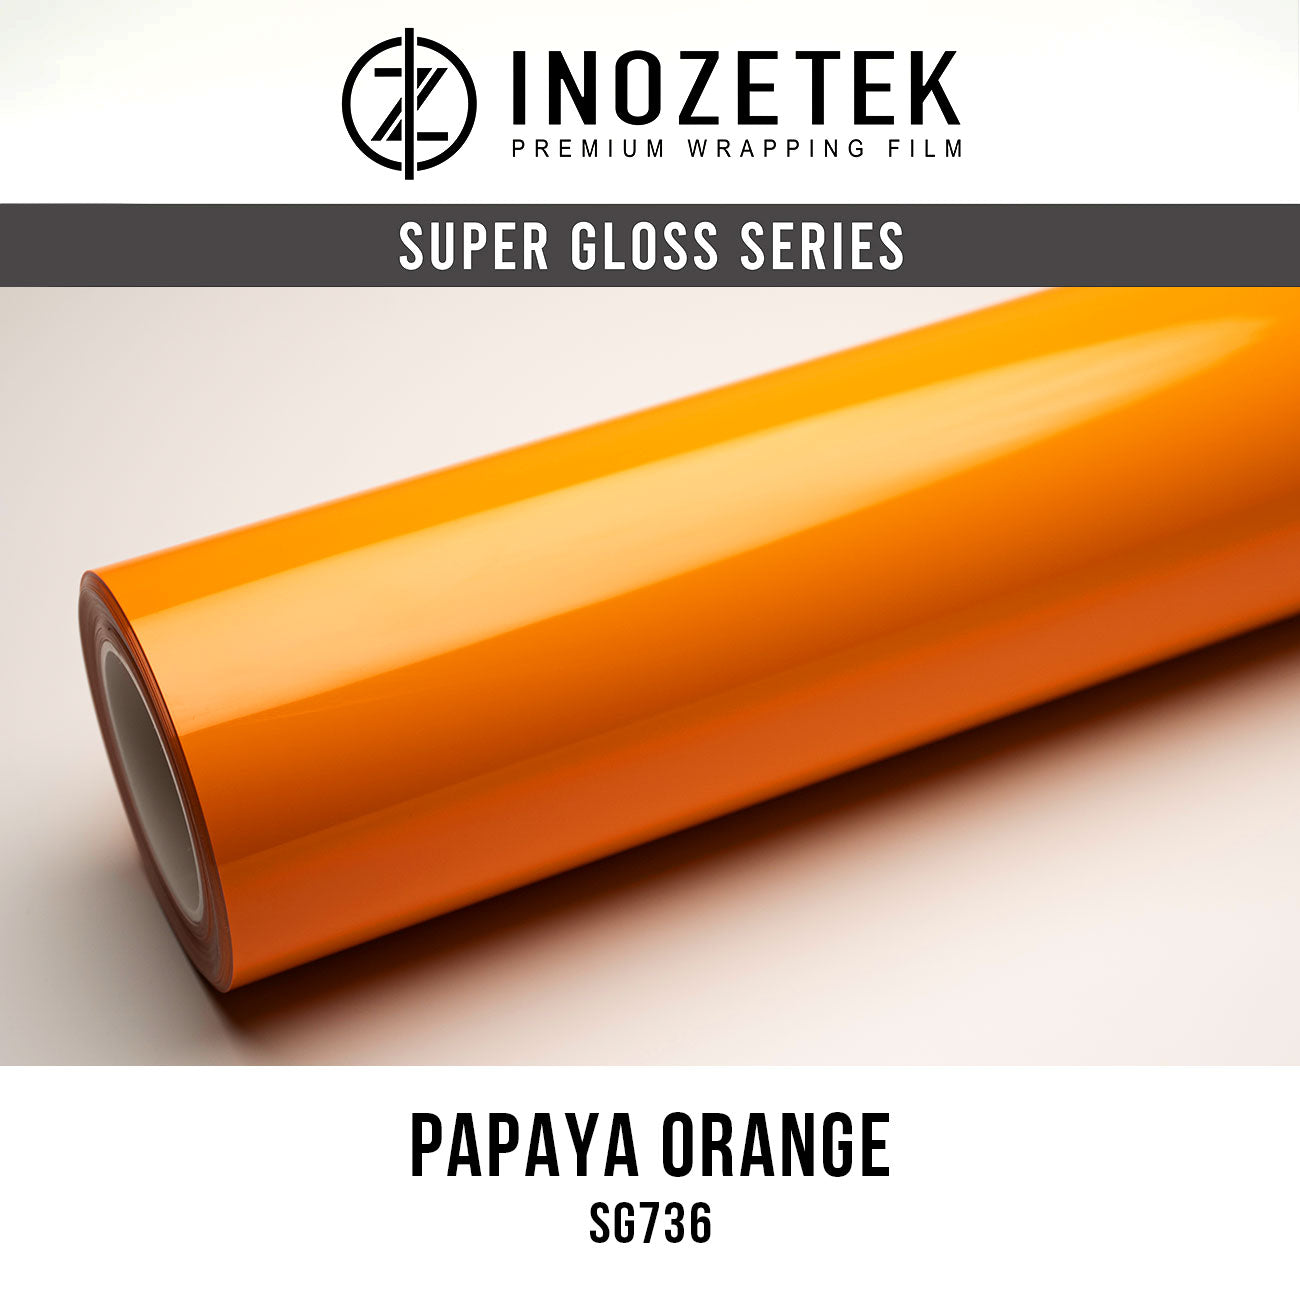 Super Gloss Papaya Orange - Inozetek USA